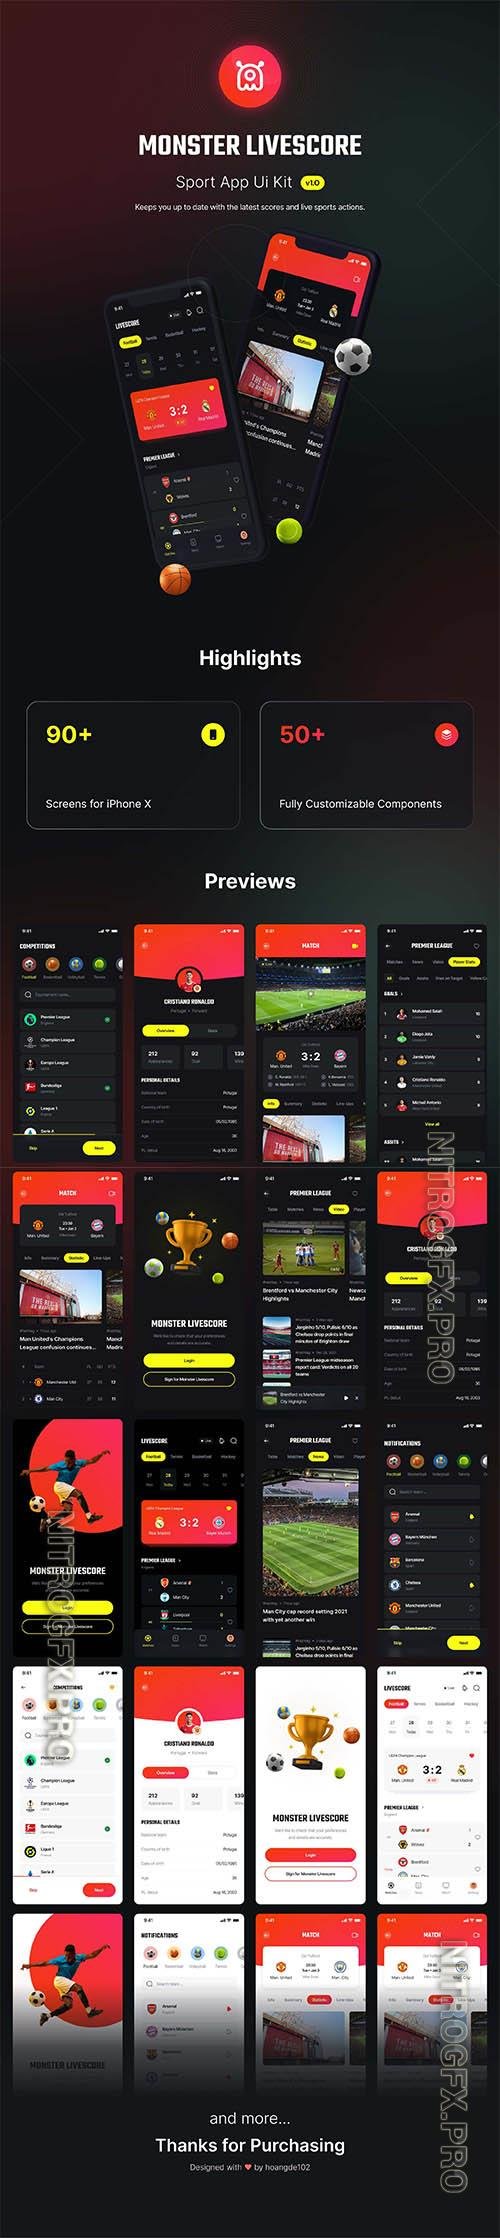 UI8 - Monster - Livescore Sport app Ui Kit